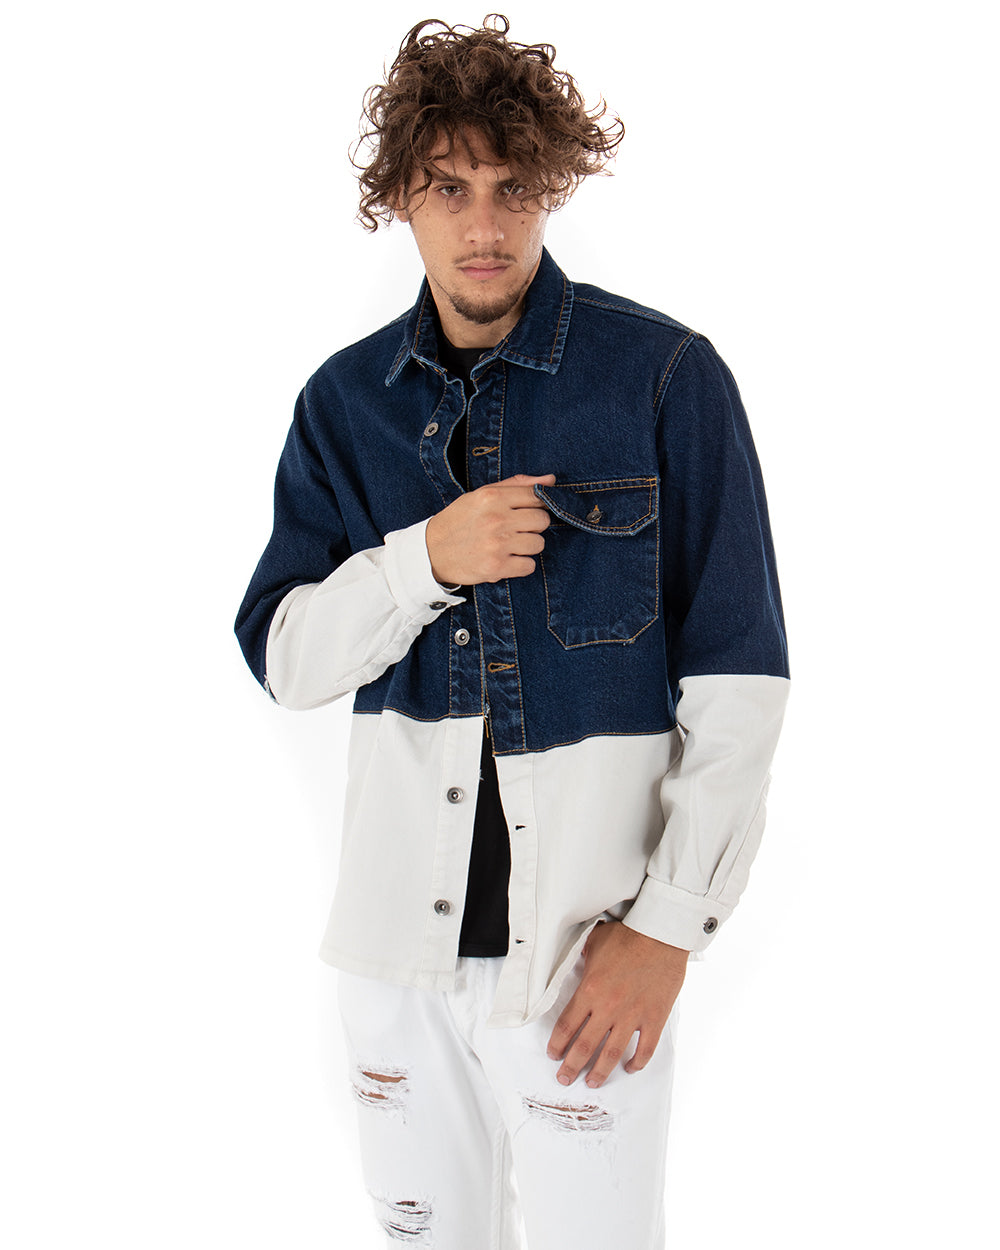 Giubbotto Uomo Giacca Jeans Con Colletto Denim Scuro Bicolore Bianco Casual GIOSAL-G2790A